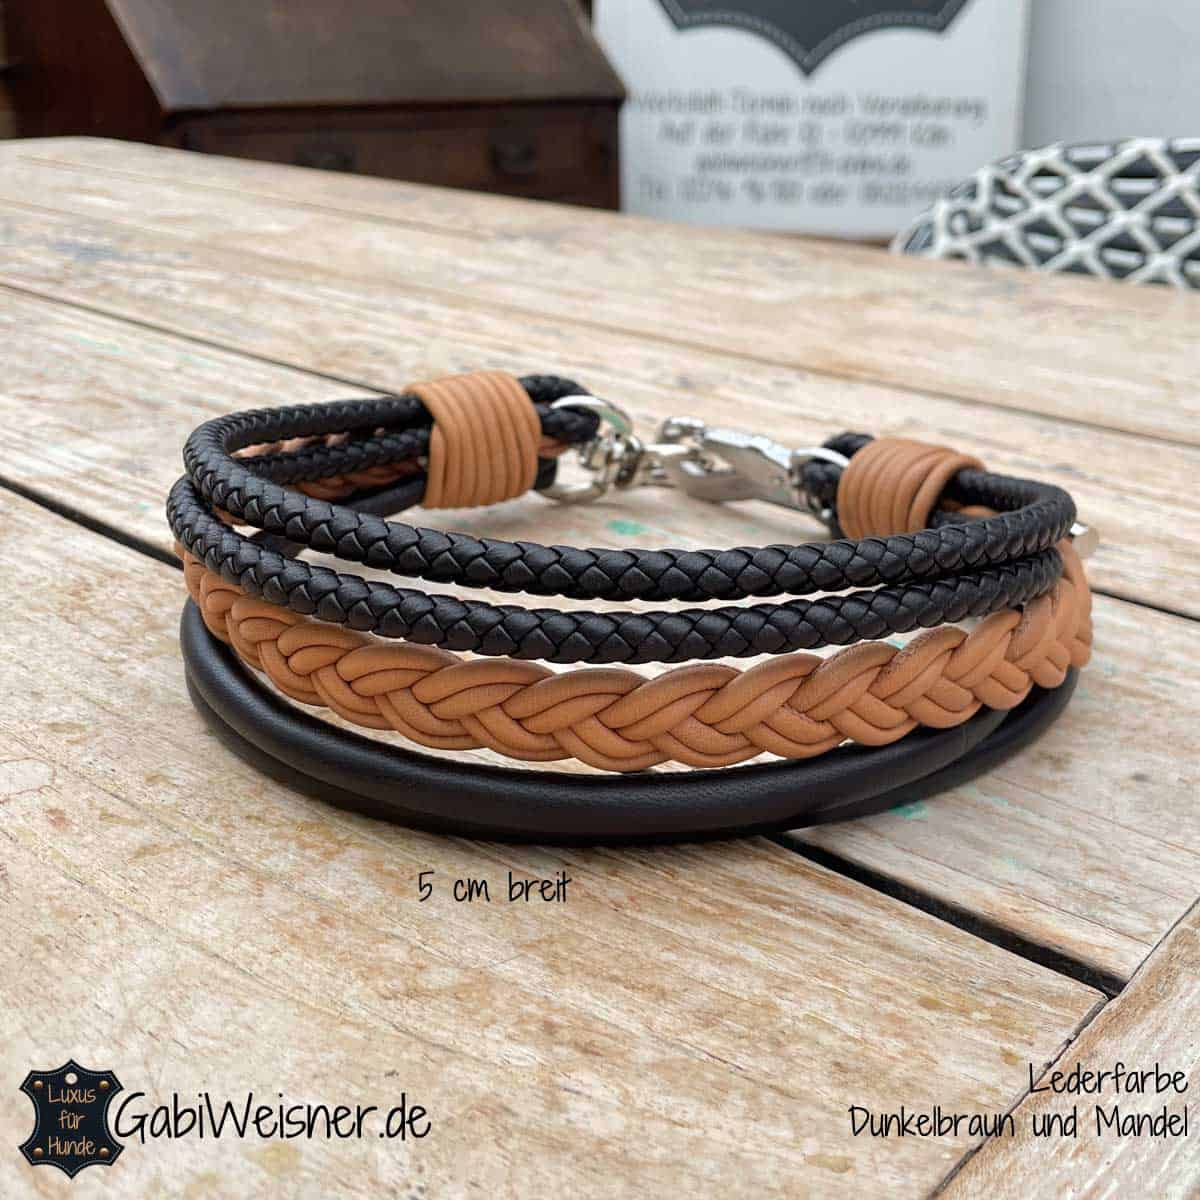 Luxus Hundehalsband aus Nappaleder 5 cm breit. Dabei ist der breite Zopf in der Mitte und die Umwicklung der Enden in einer Farbe nach Wunsch wählbar.